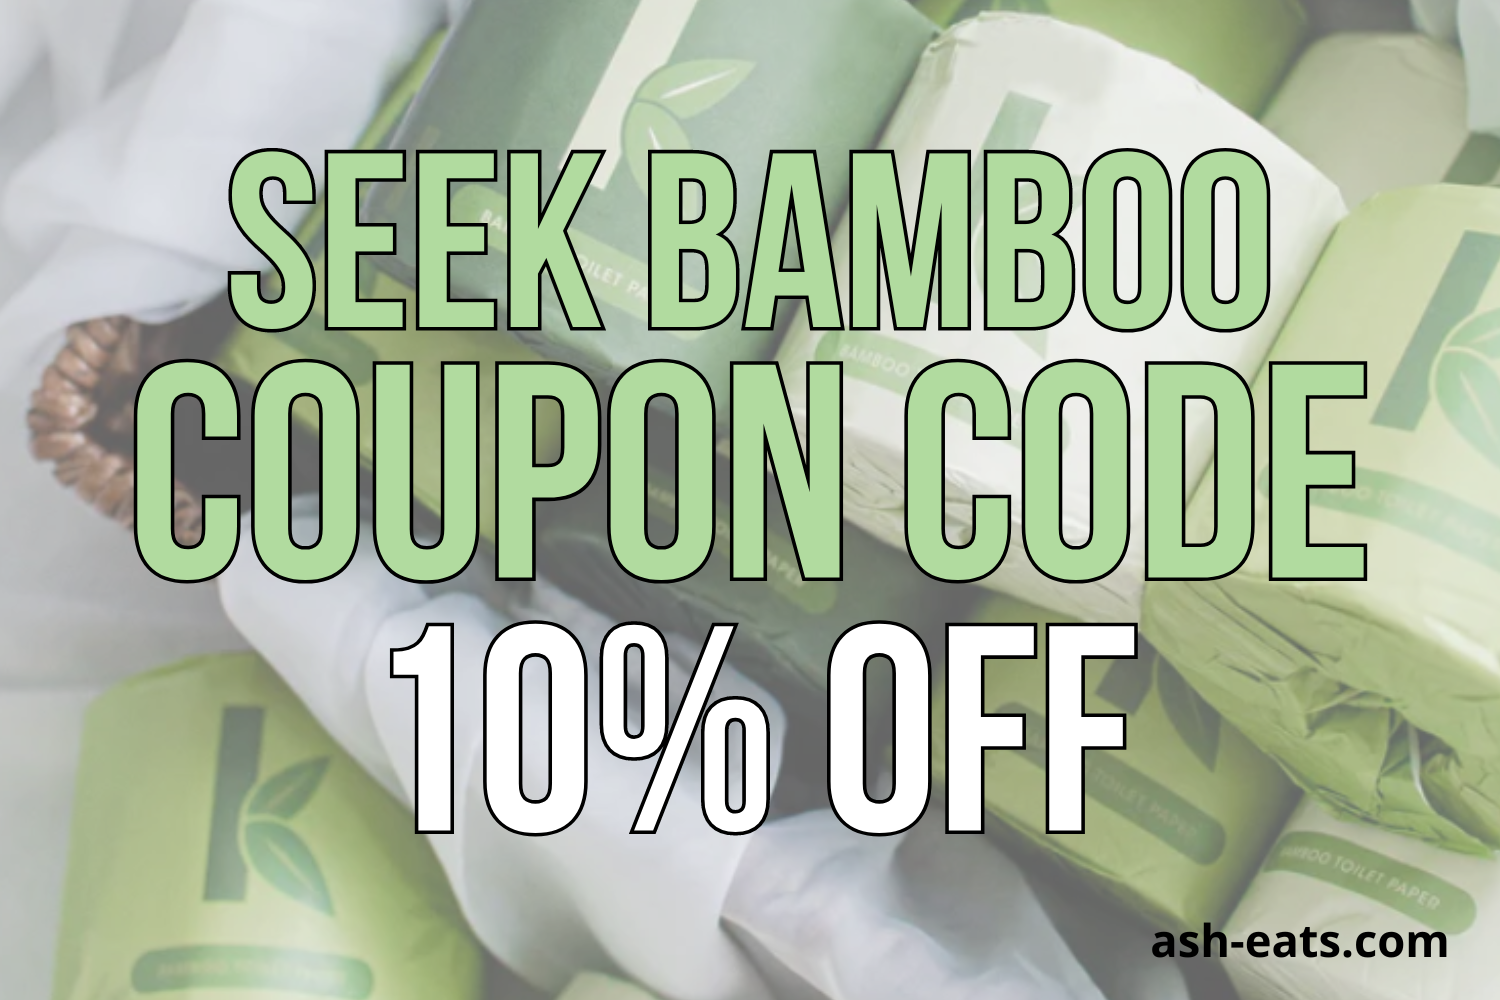 seek bamboo coupon code